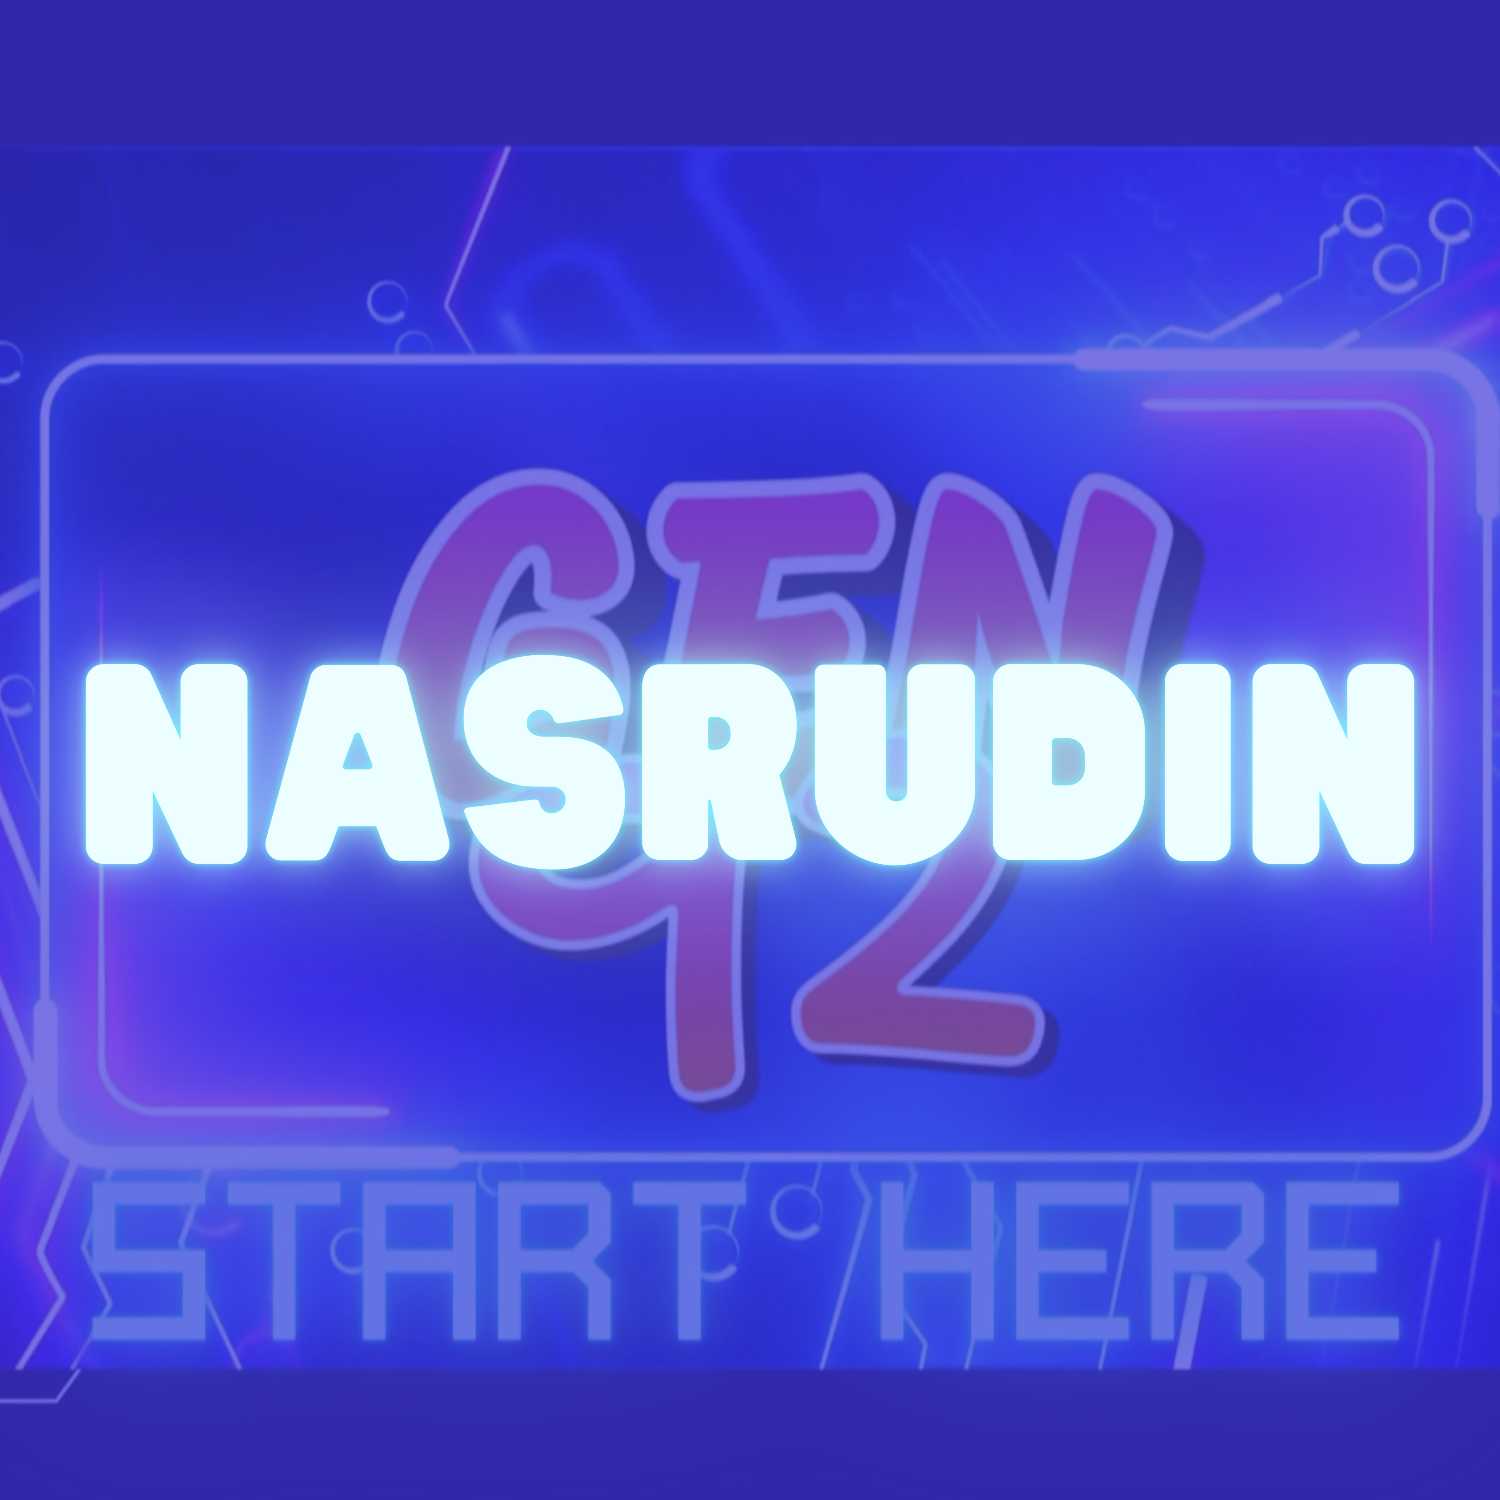 Los cuentos de Nasrudin: una forma divertida de aprender sobre la vida y la espiritualidad